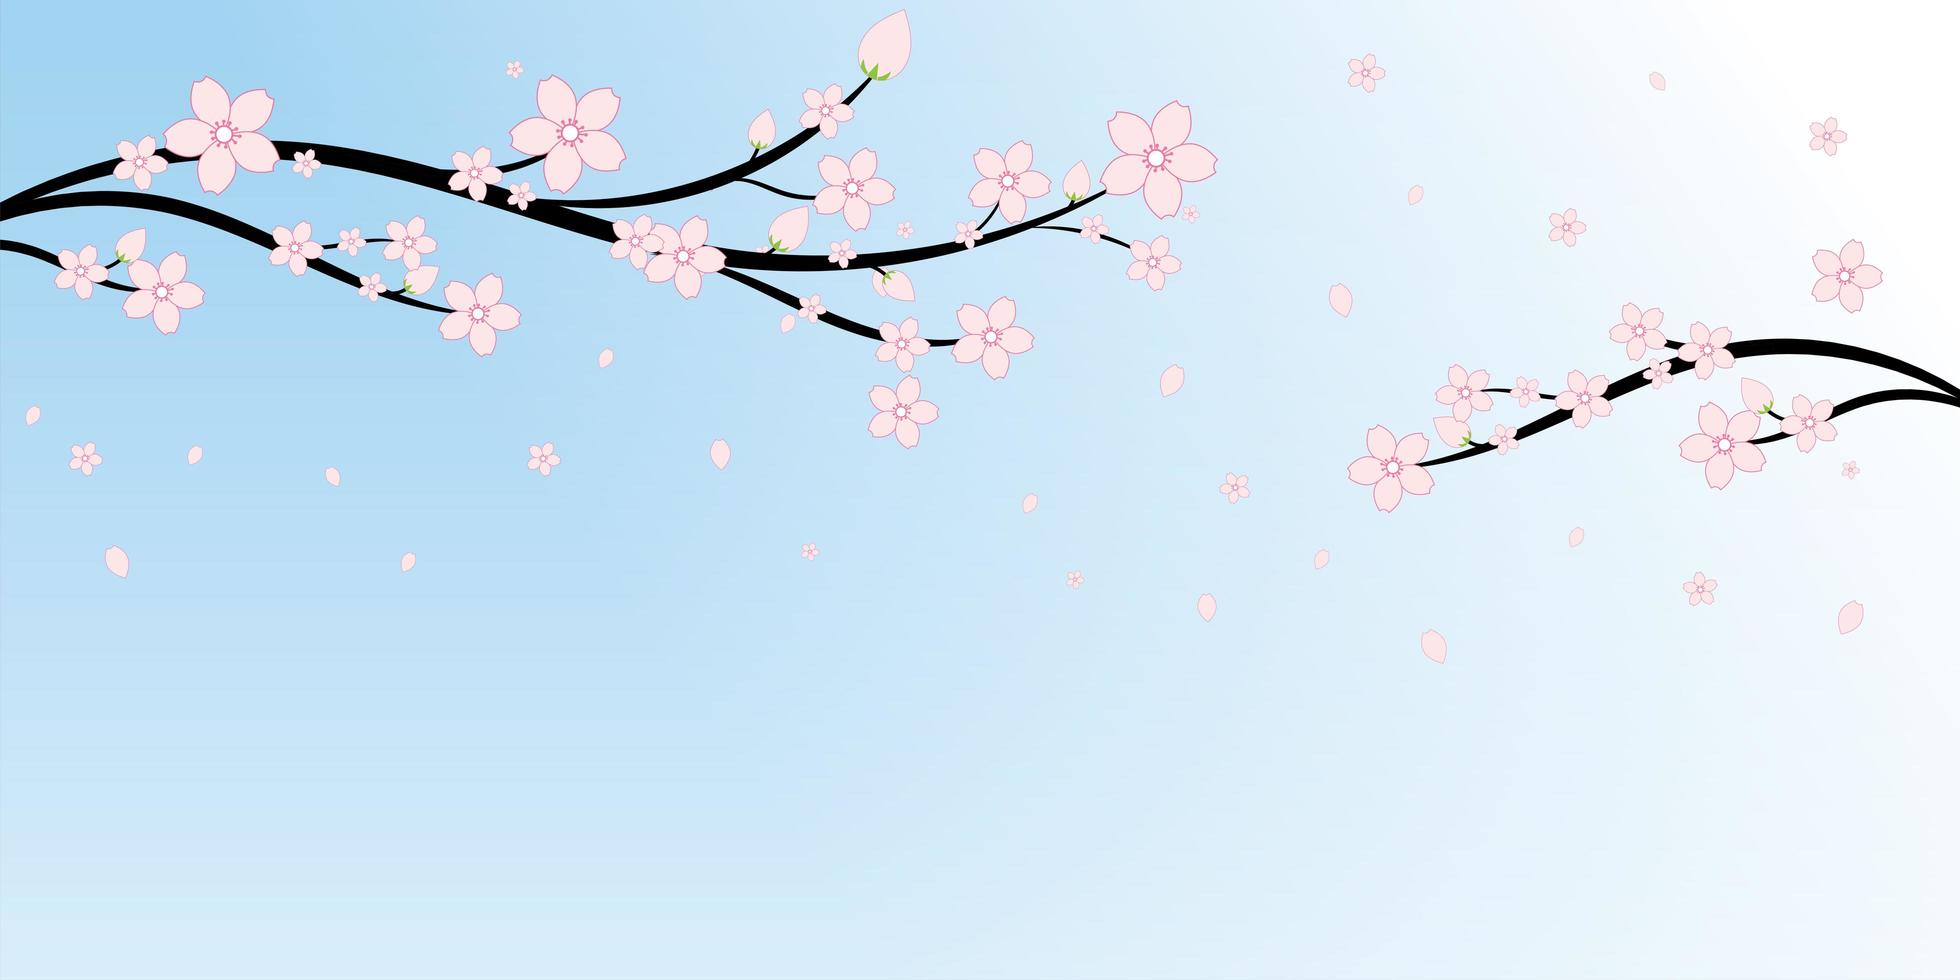 fiori di ciliegio giapponese e sfondo di rami vettore